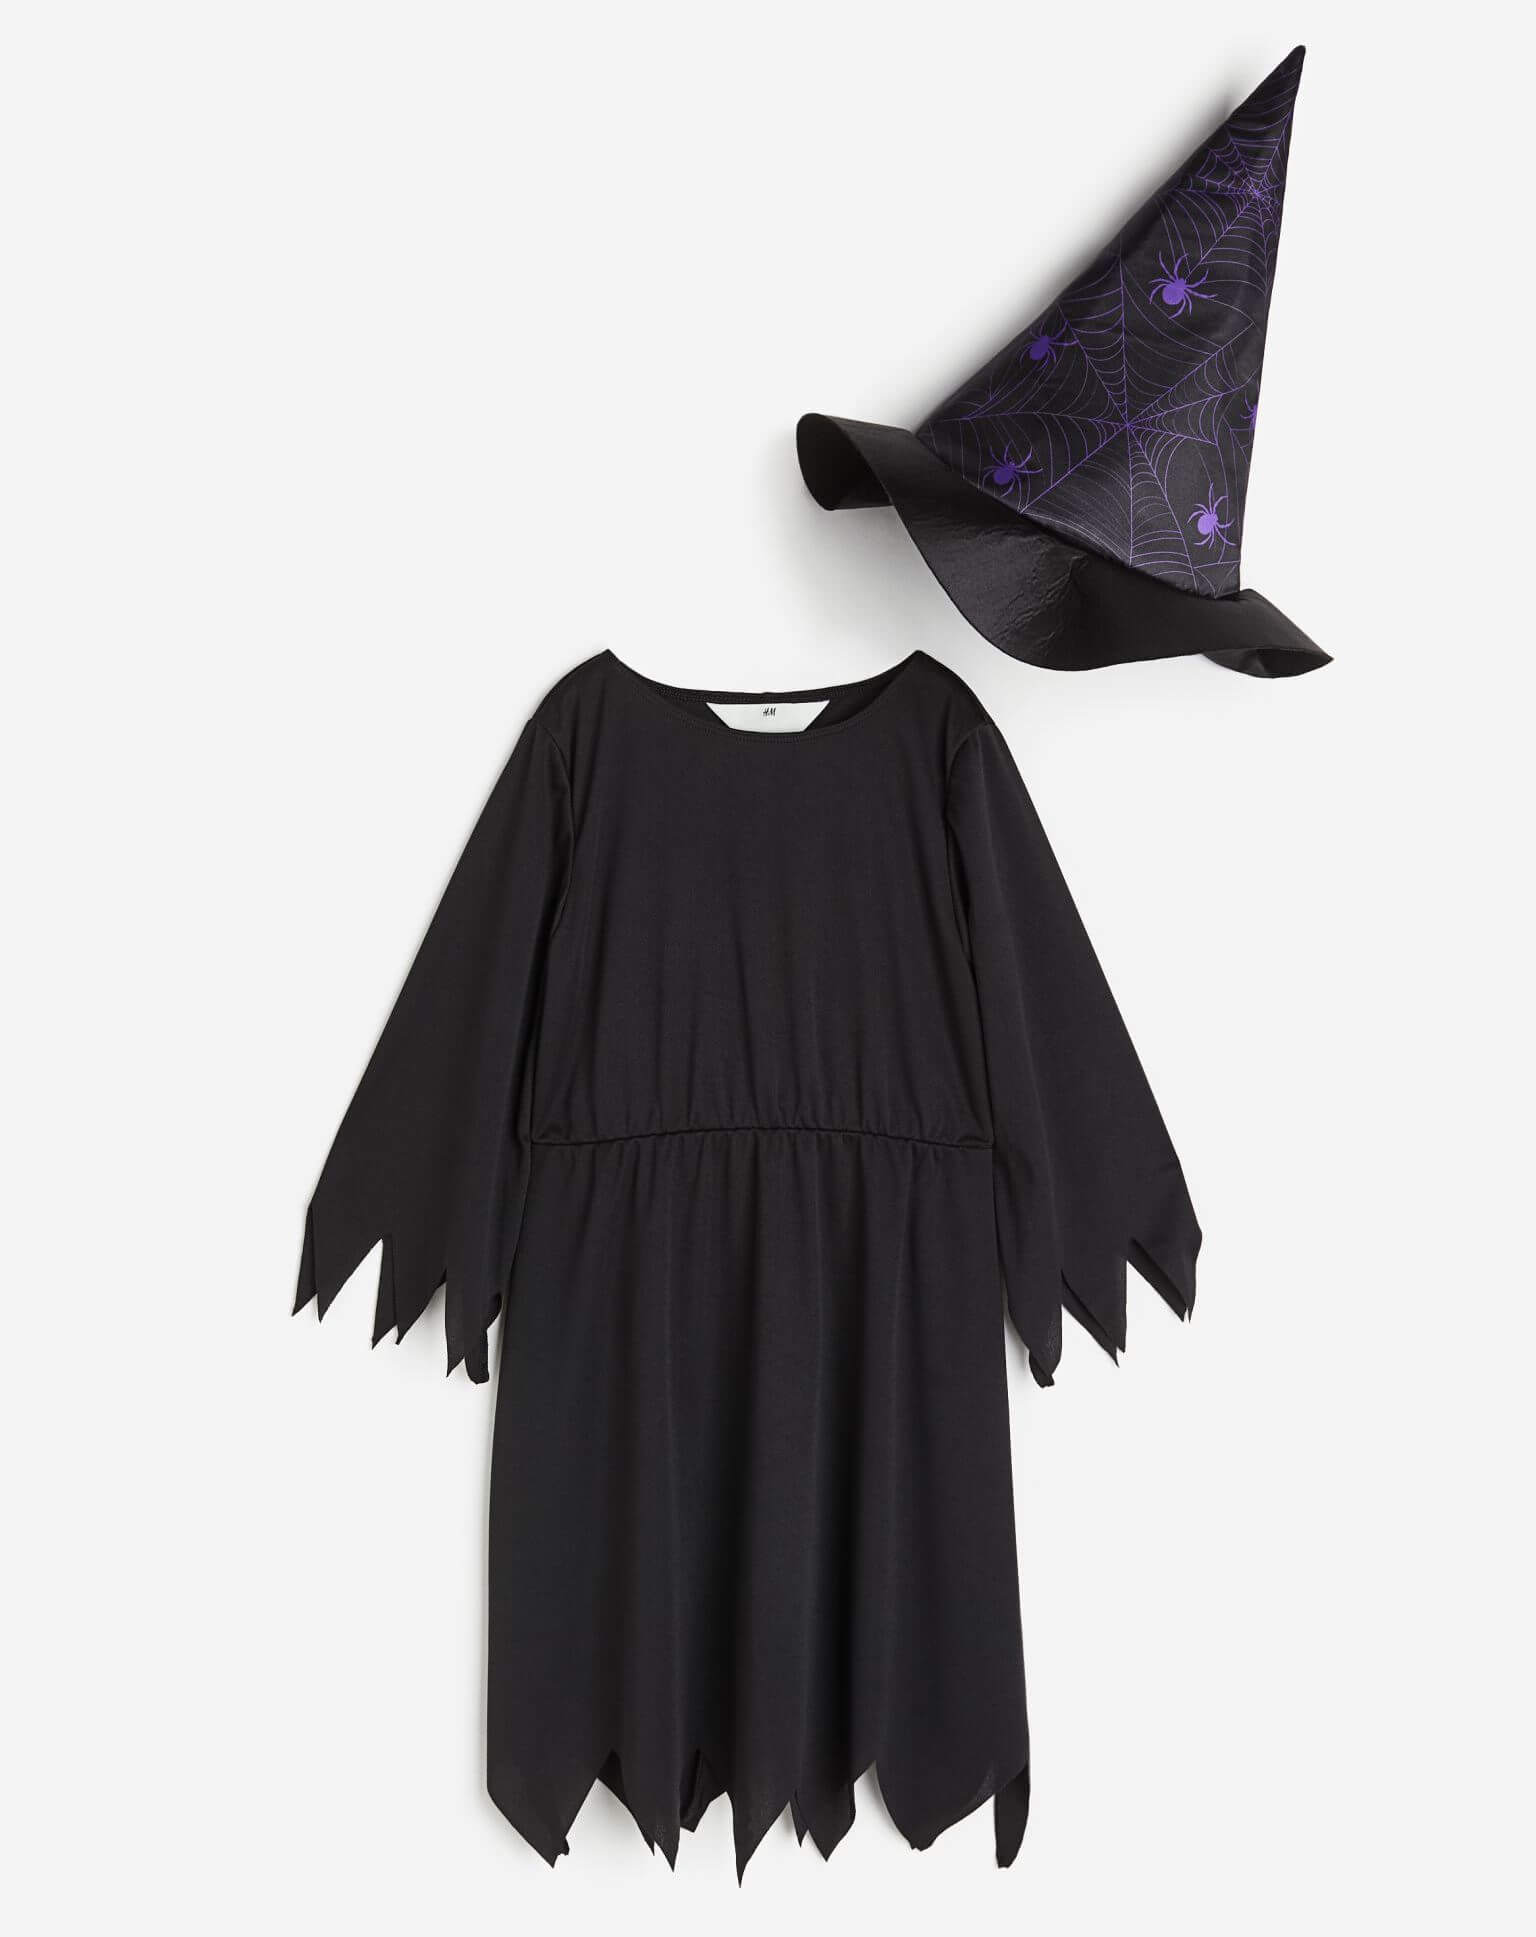 Карнавальный костюм H&M Spiders Witch, черный/фиолетовый 6 шт шляпа ведьмы шляпа ведьмы костюм ведьмы шляпы ведьмы звёздные для ведьмы тематическое украшение